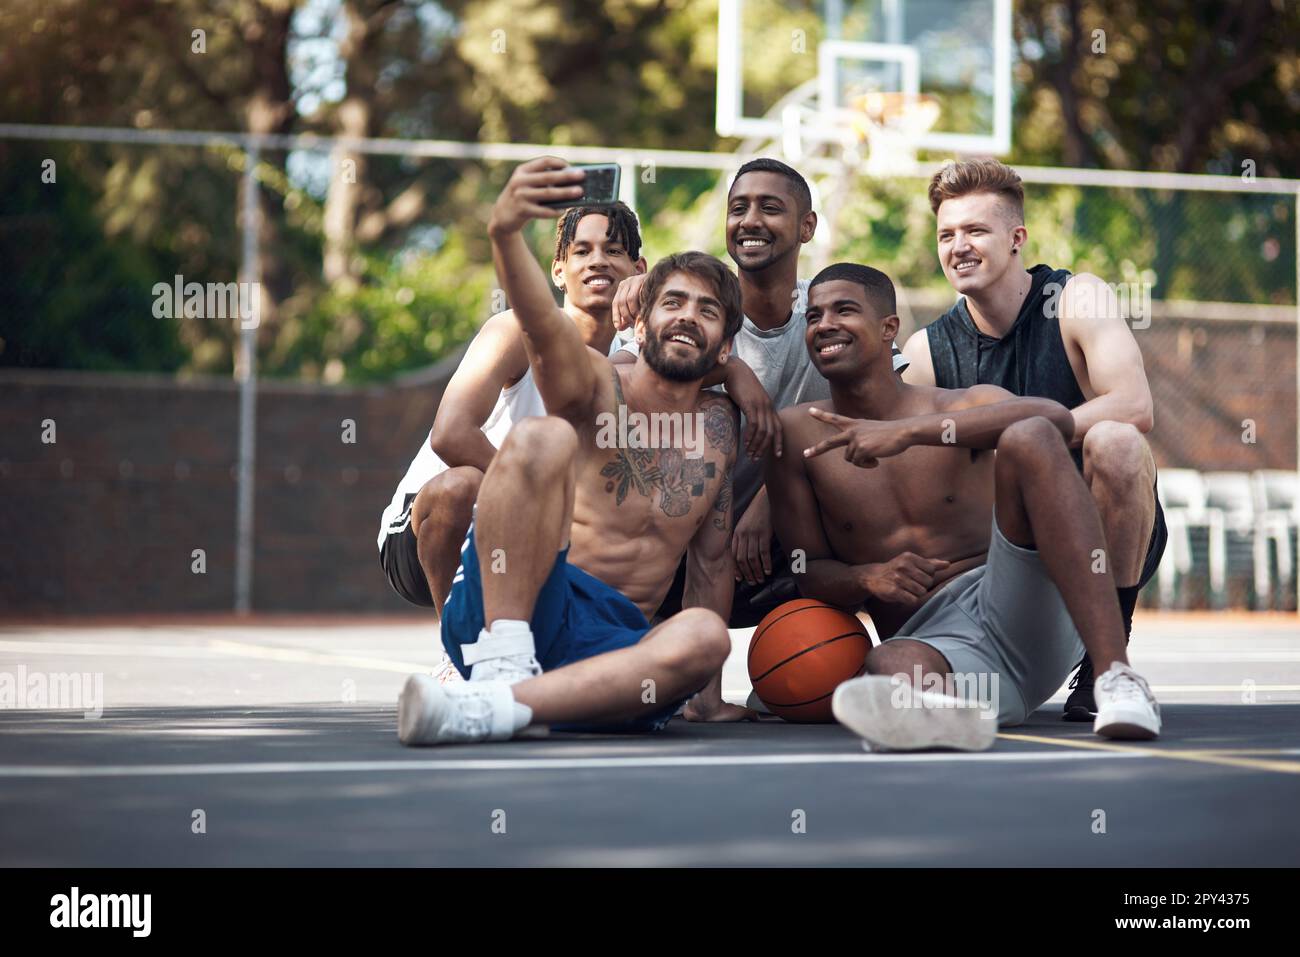 Solo un gruppo di amanti del basket. un gruppo di giovani sportivi che prendono selfie insieme su un campo sportivo. Foto Stock